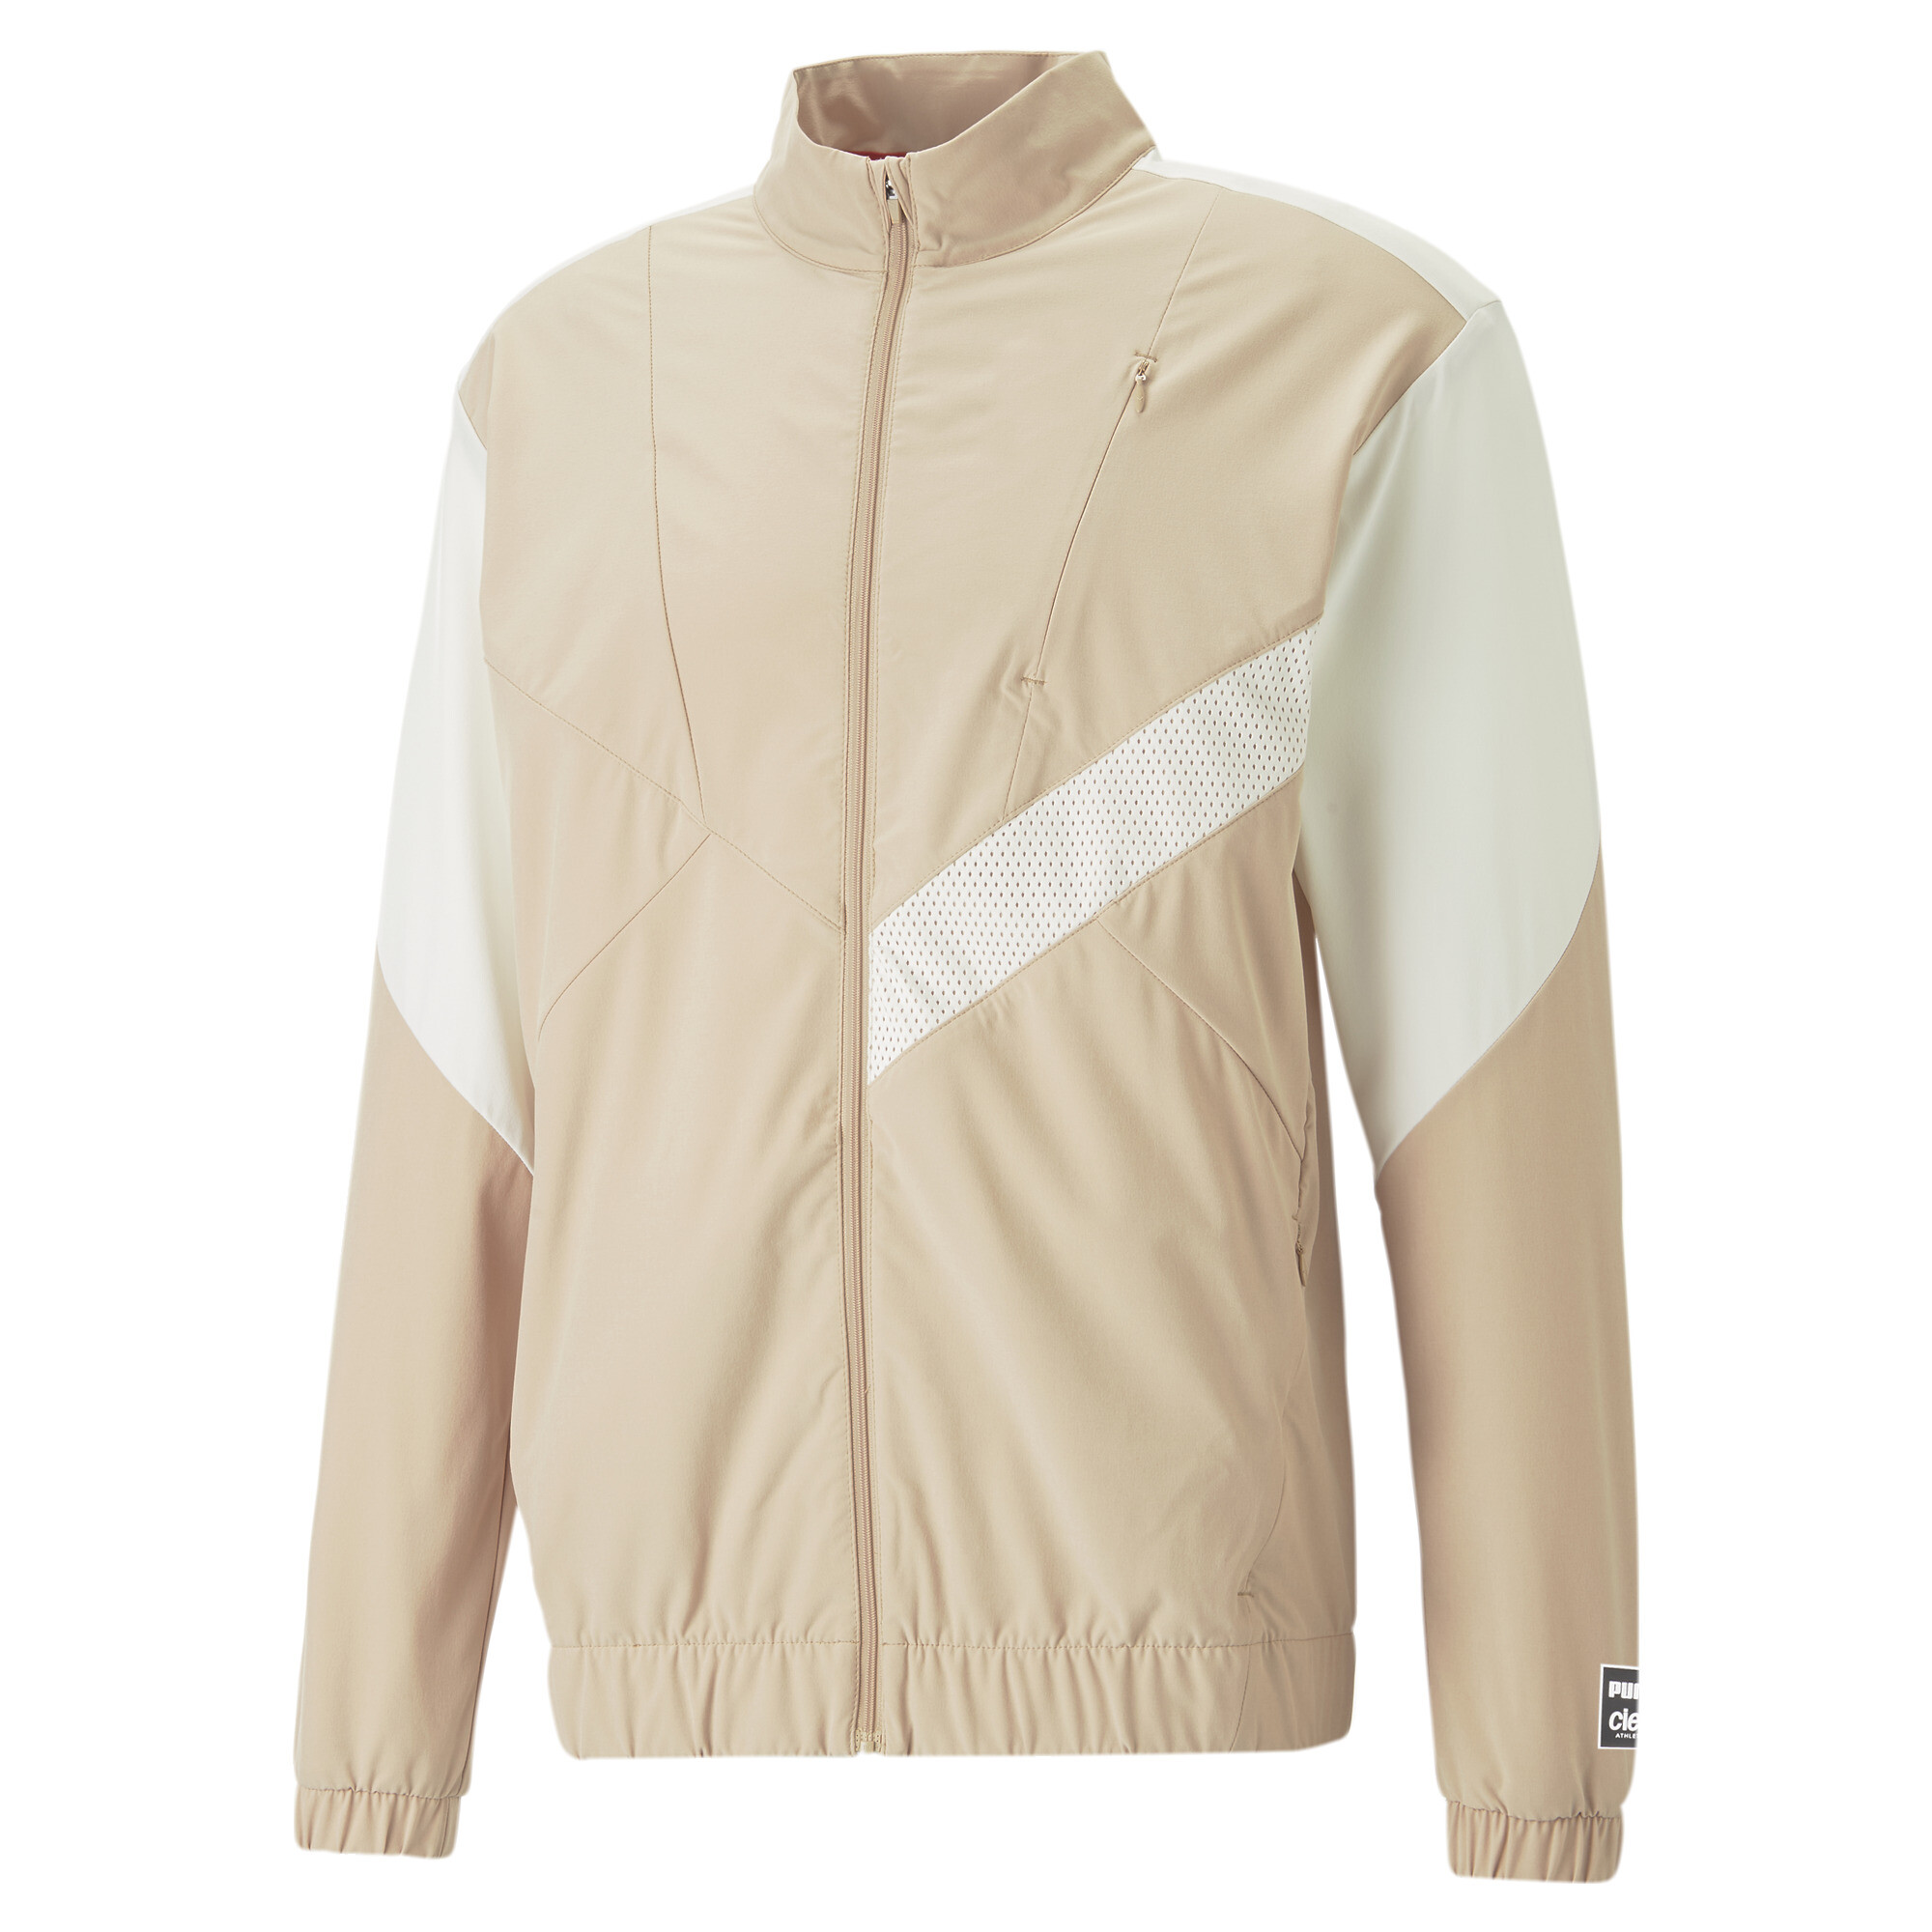 Men's Puma X CIELE Running Tracksuit Jacket, Beige, Size XS, Clothing